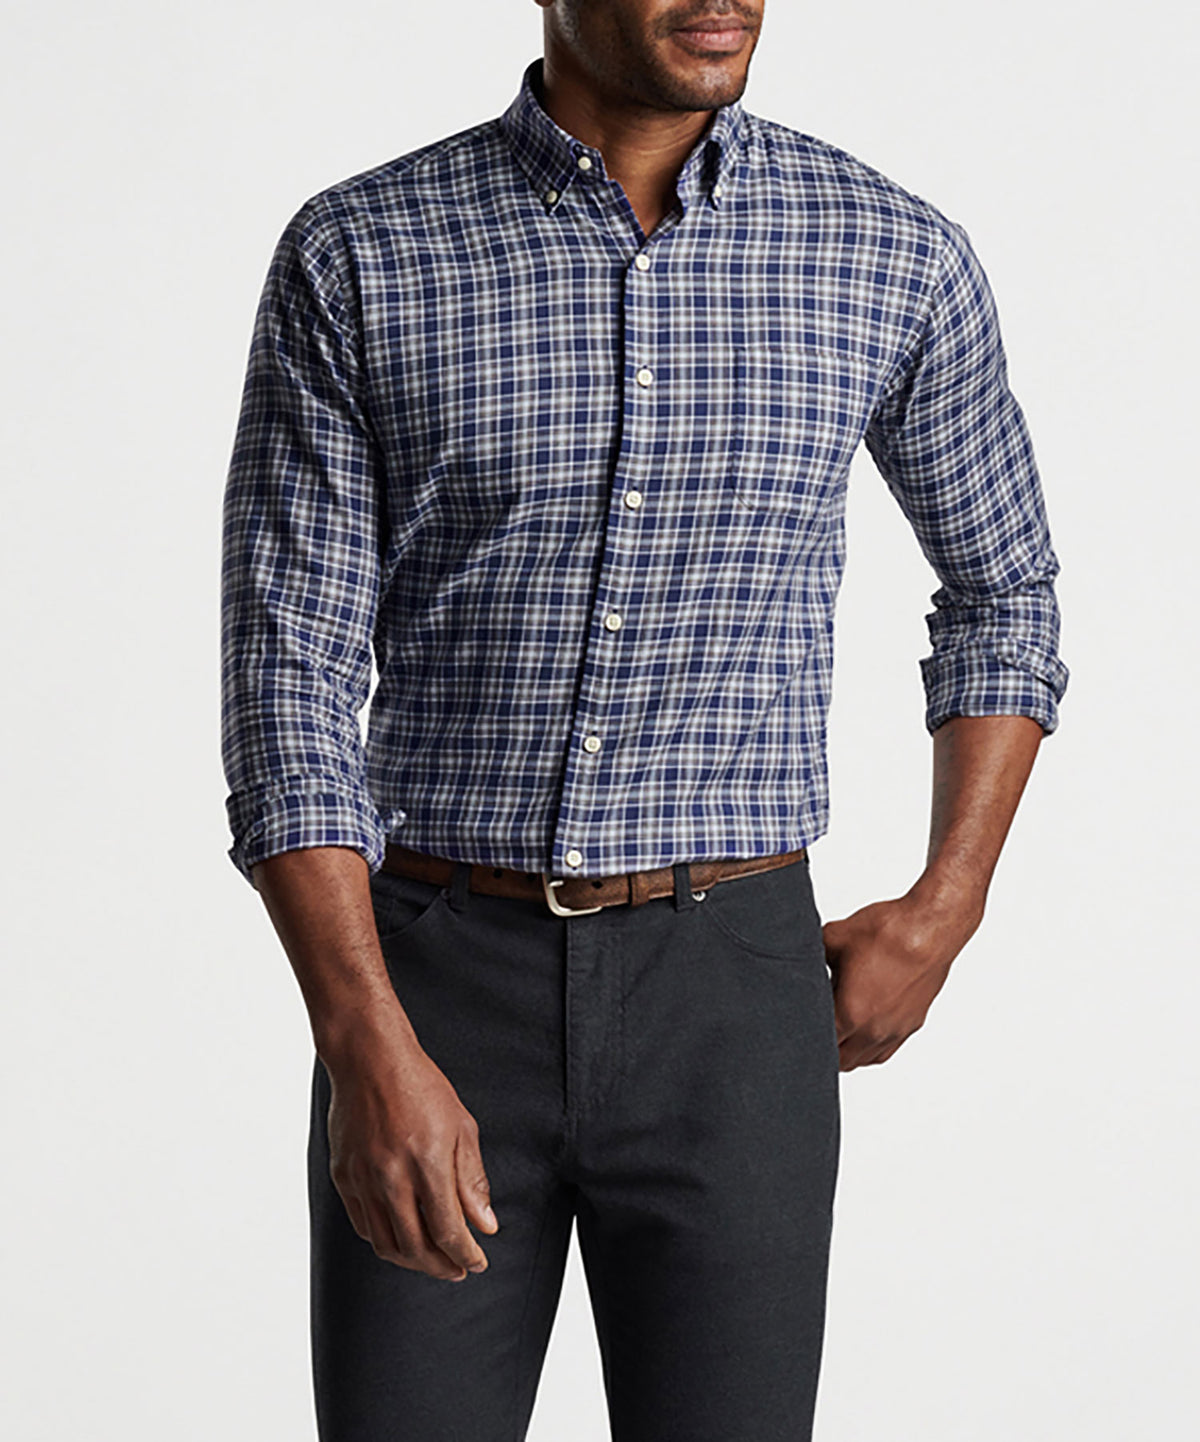 Peter Millar Long Sleeve Haight Sport Shirt, Men's Big & Tall